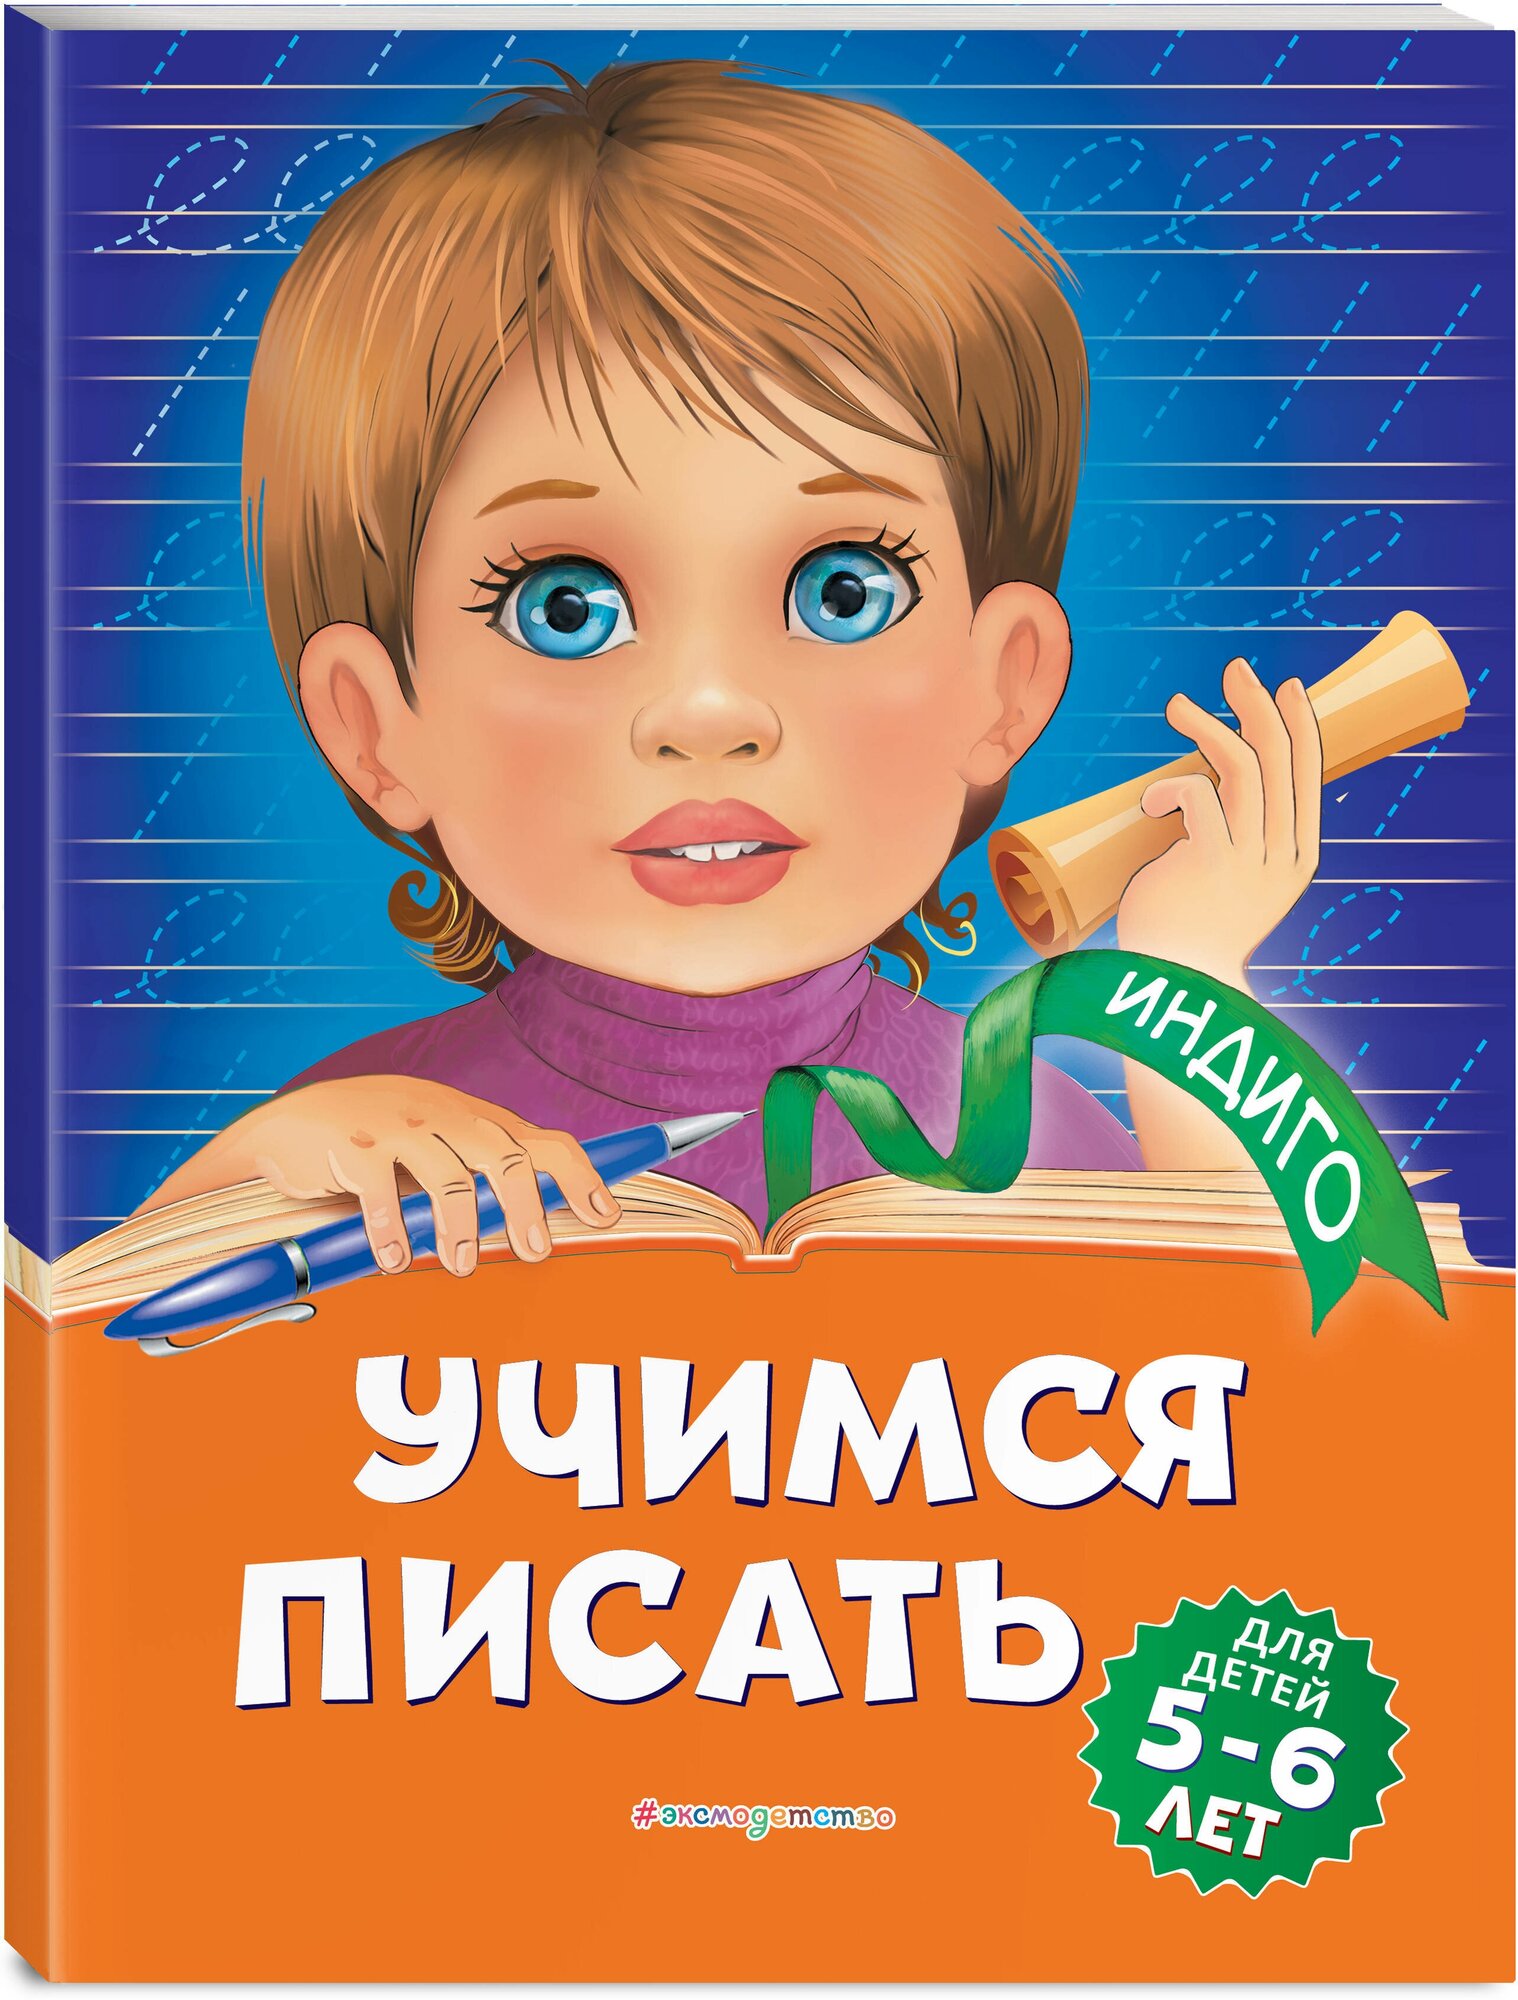 Пономарева А. В. Учимся писать: для детей 5-6 лет